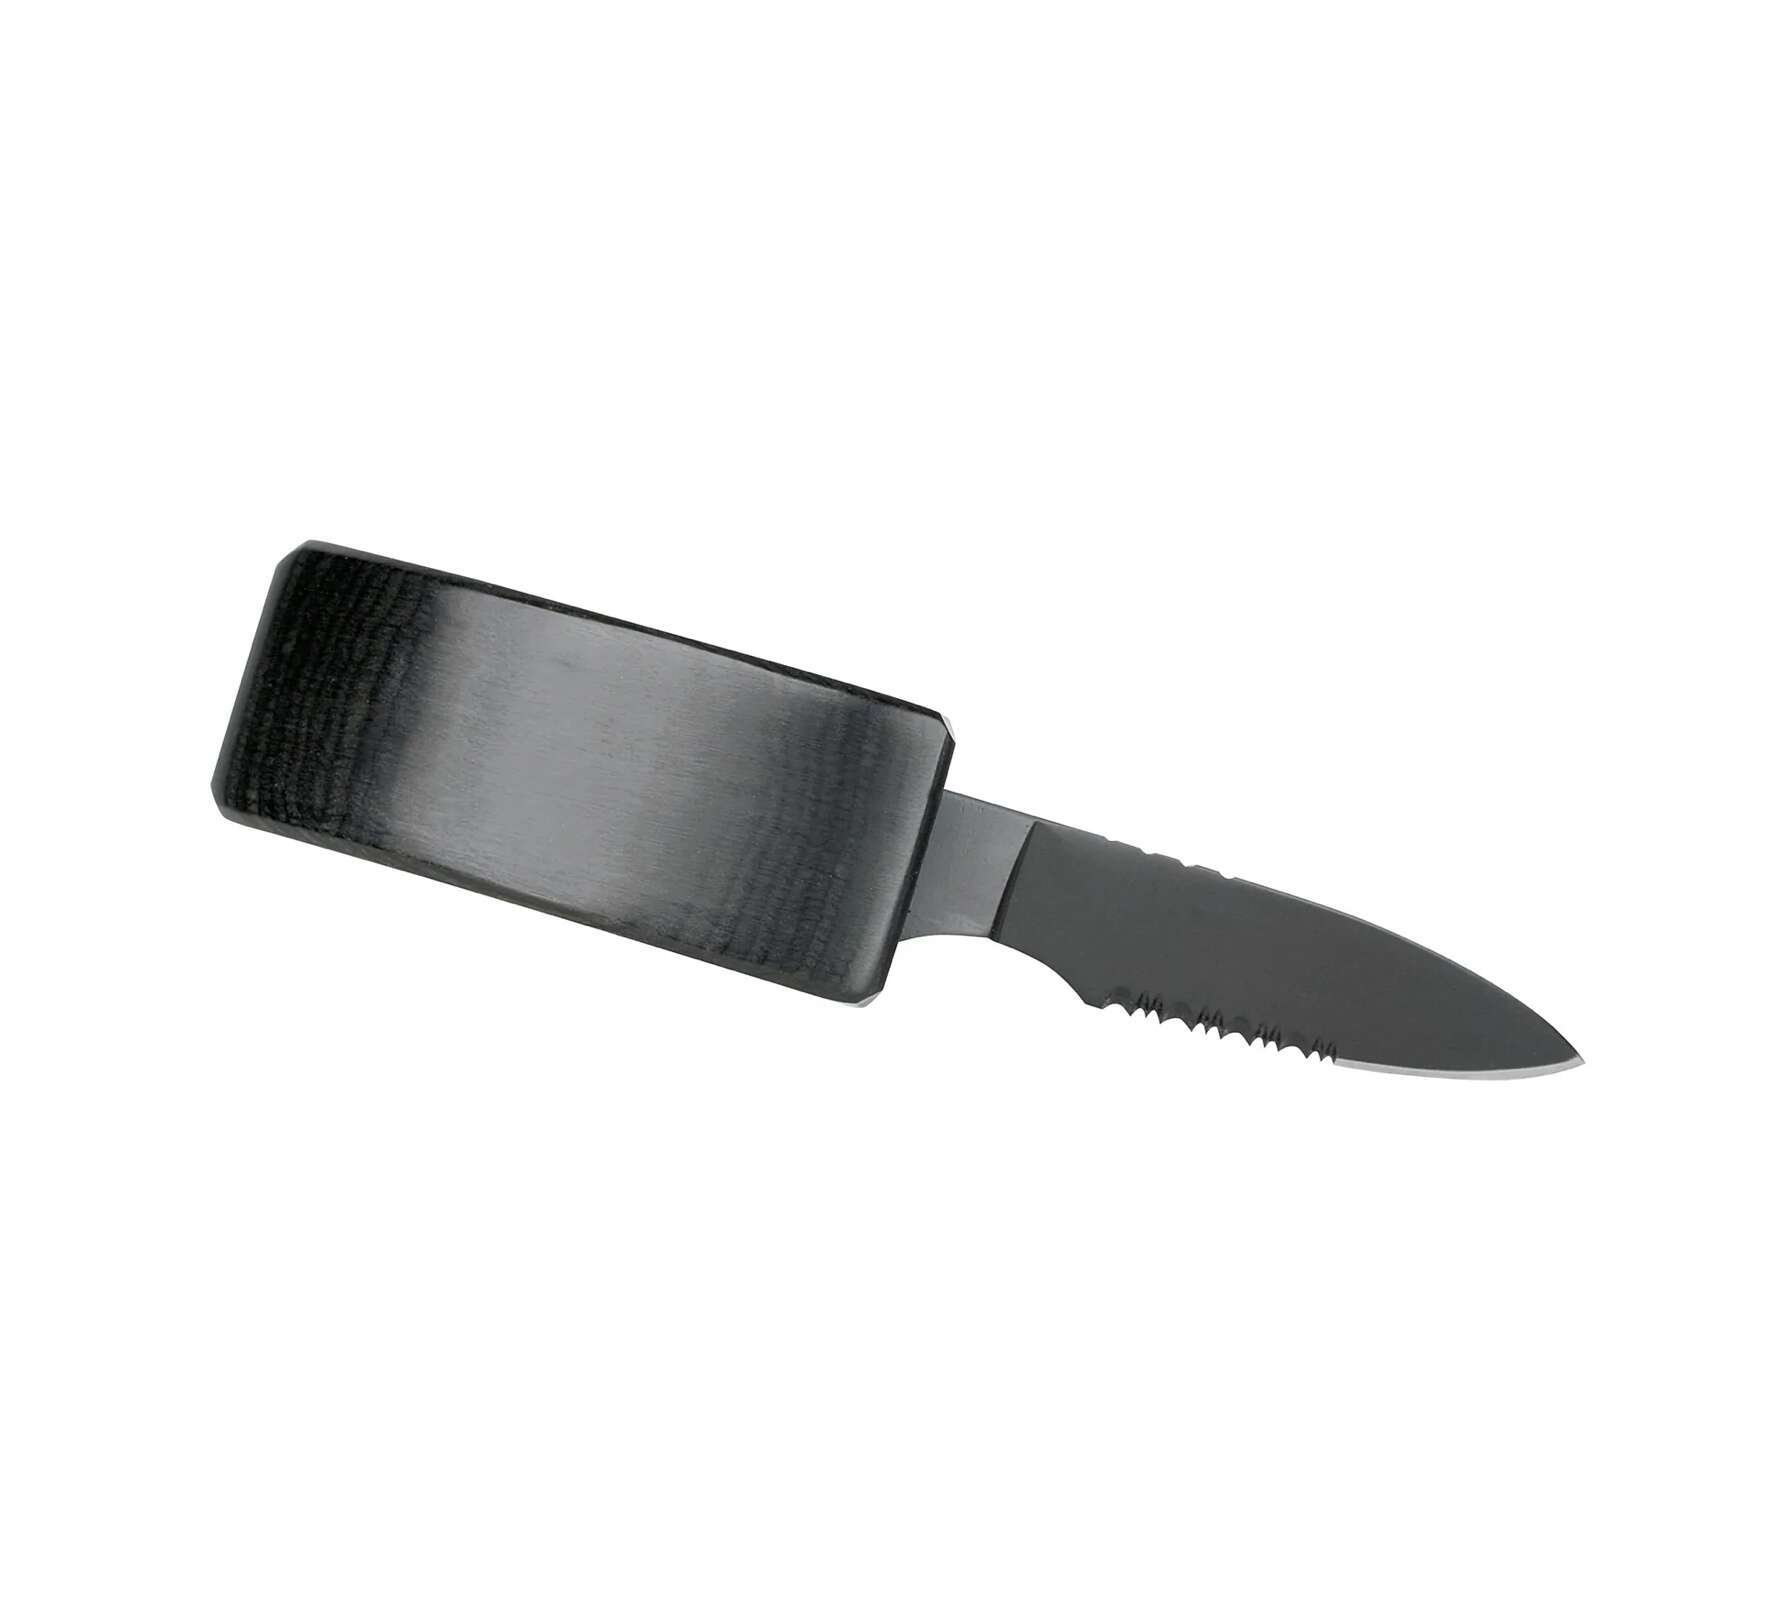 Black Belt Concealed Self Defense Knife